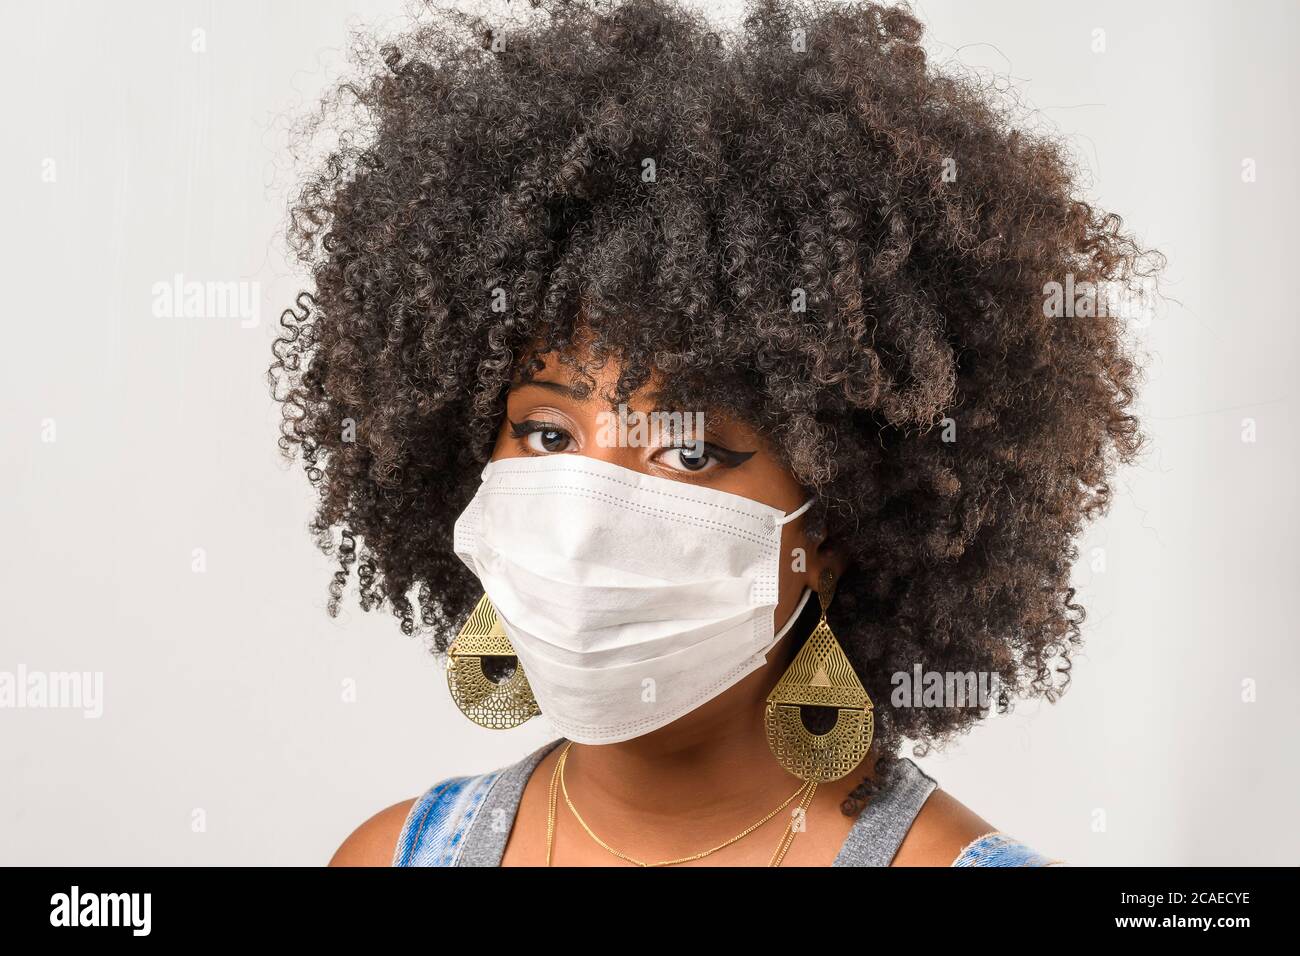 jeune fille portant un masque protecteur en cas de pandémie du virus corona, covid-19 Banque D'Images